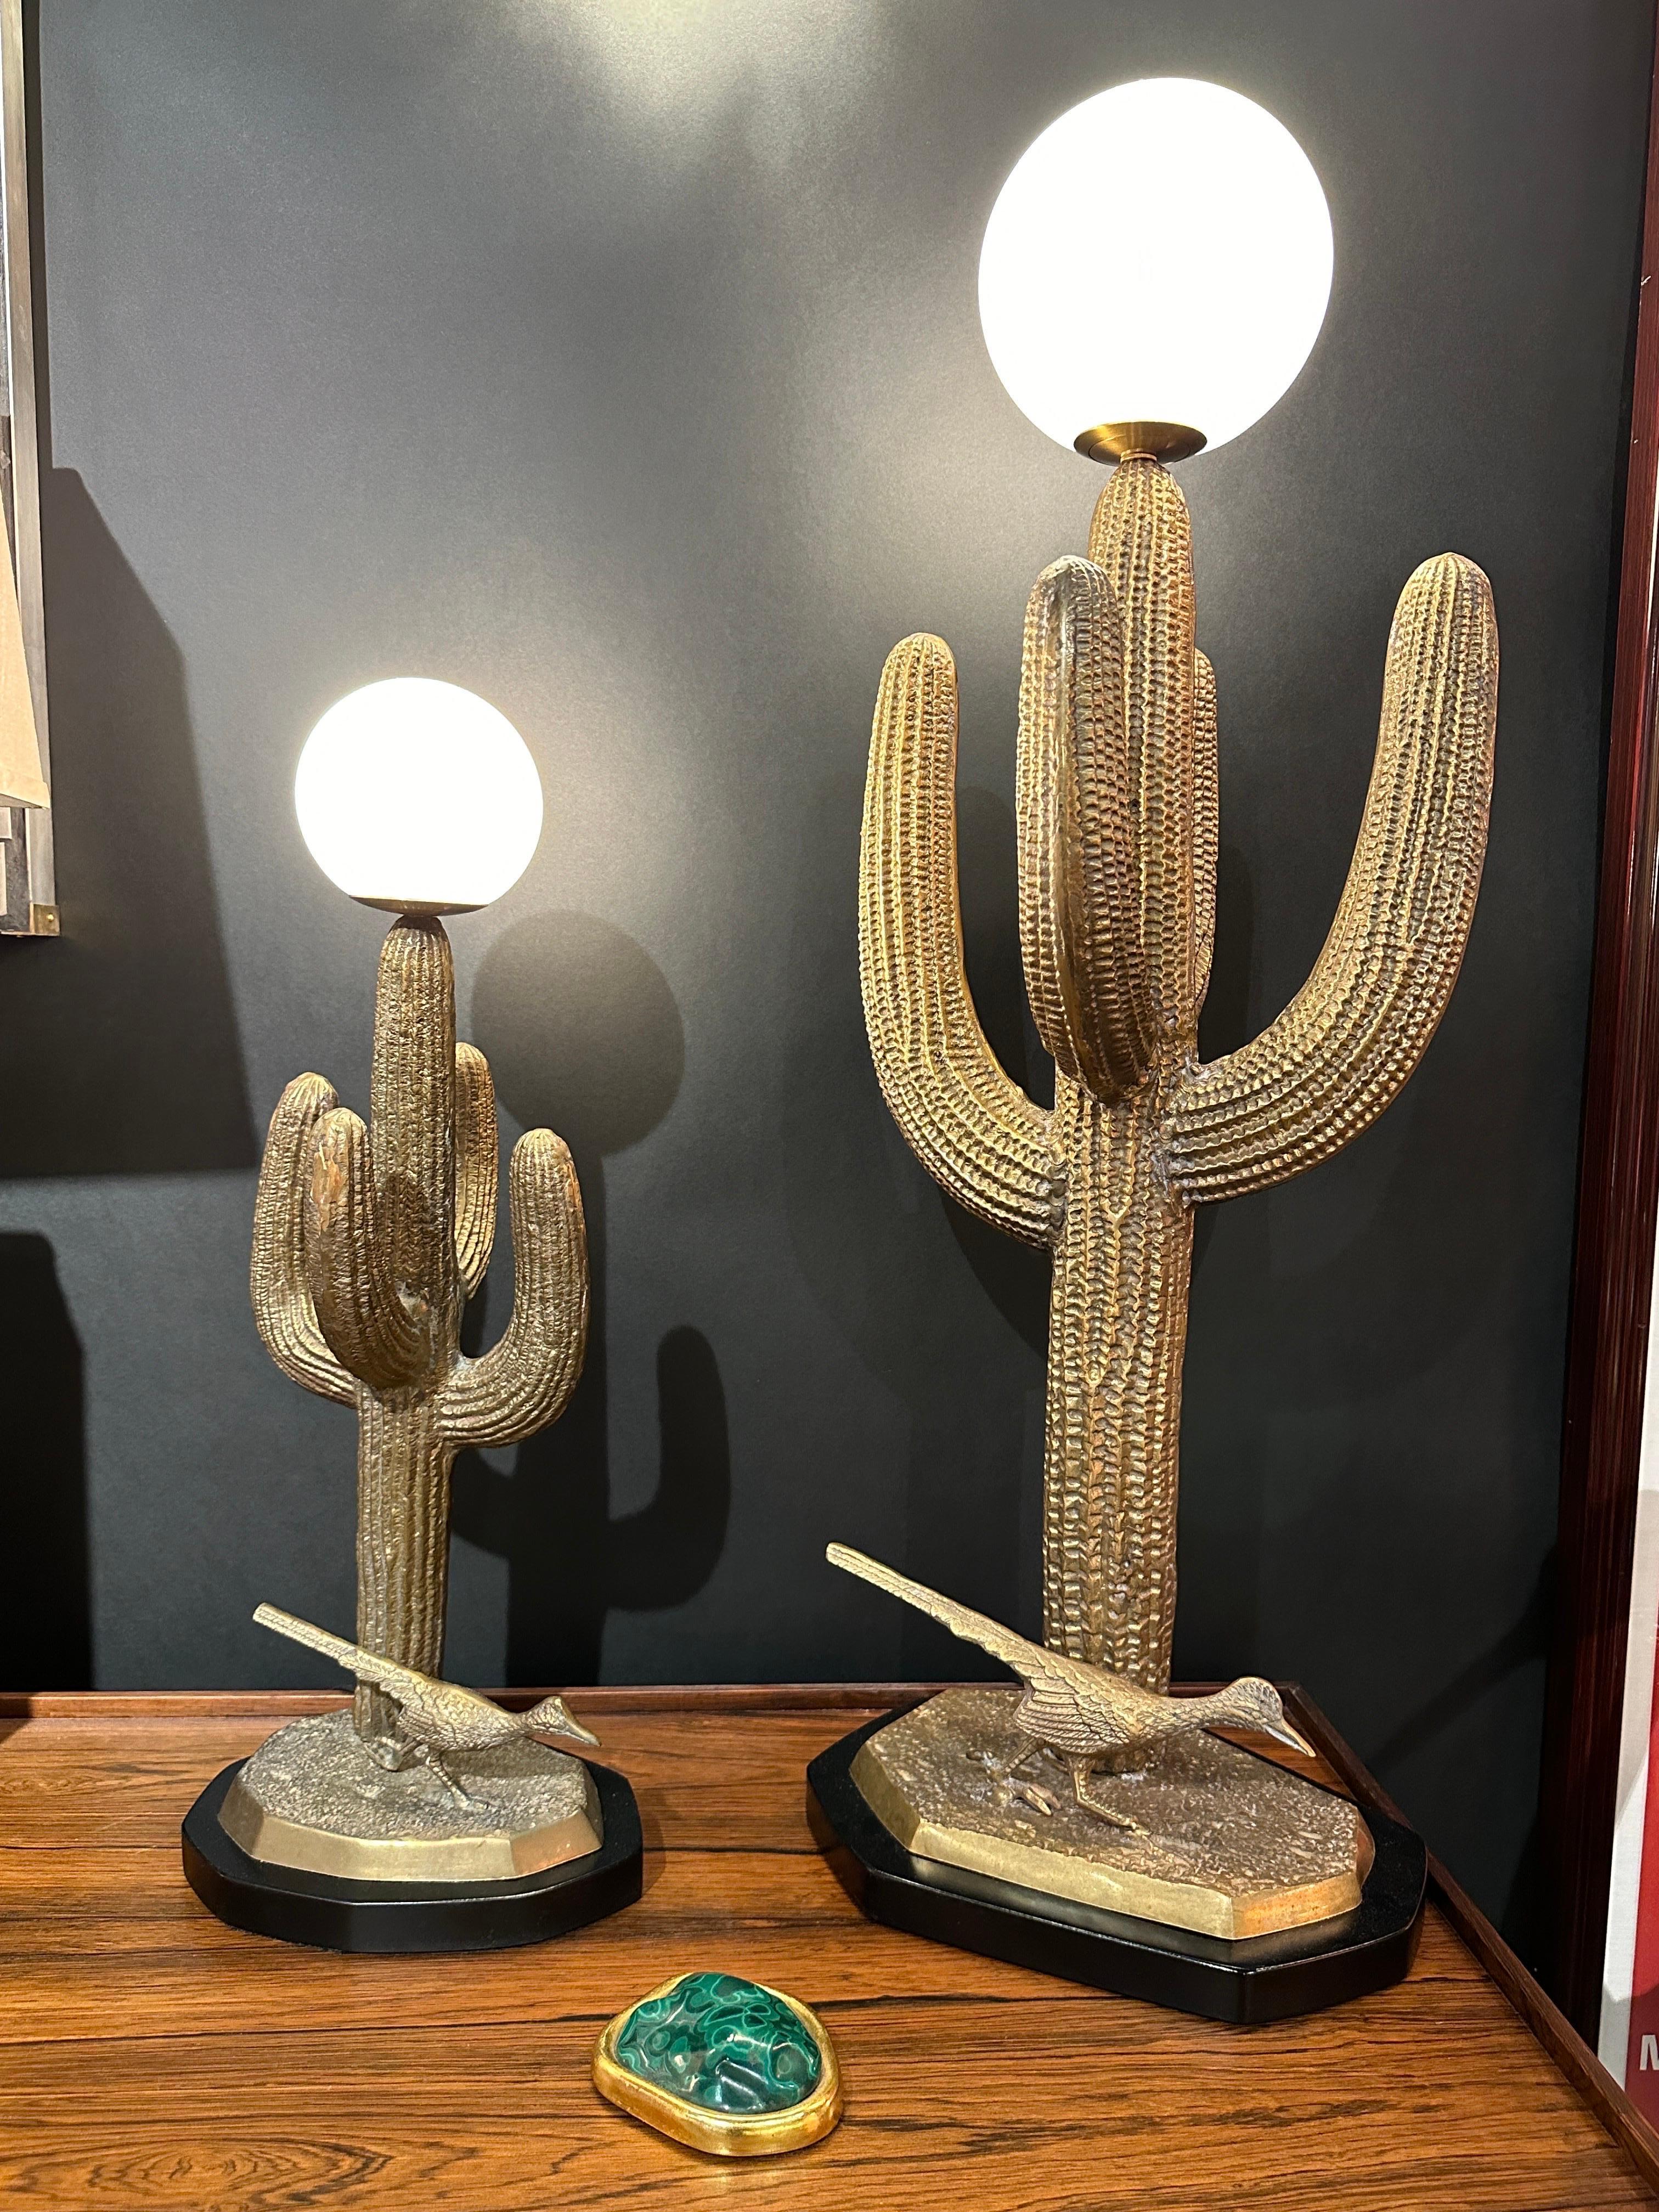 Large Brass Saguaro Cactus Sculpture Lamp For Sale 3